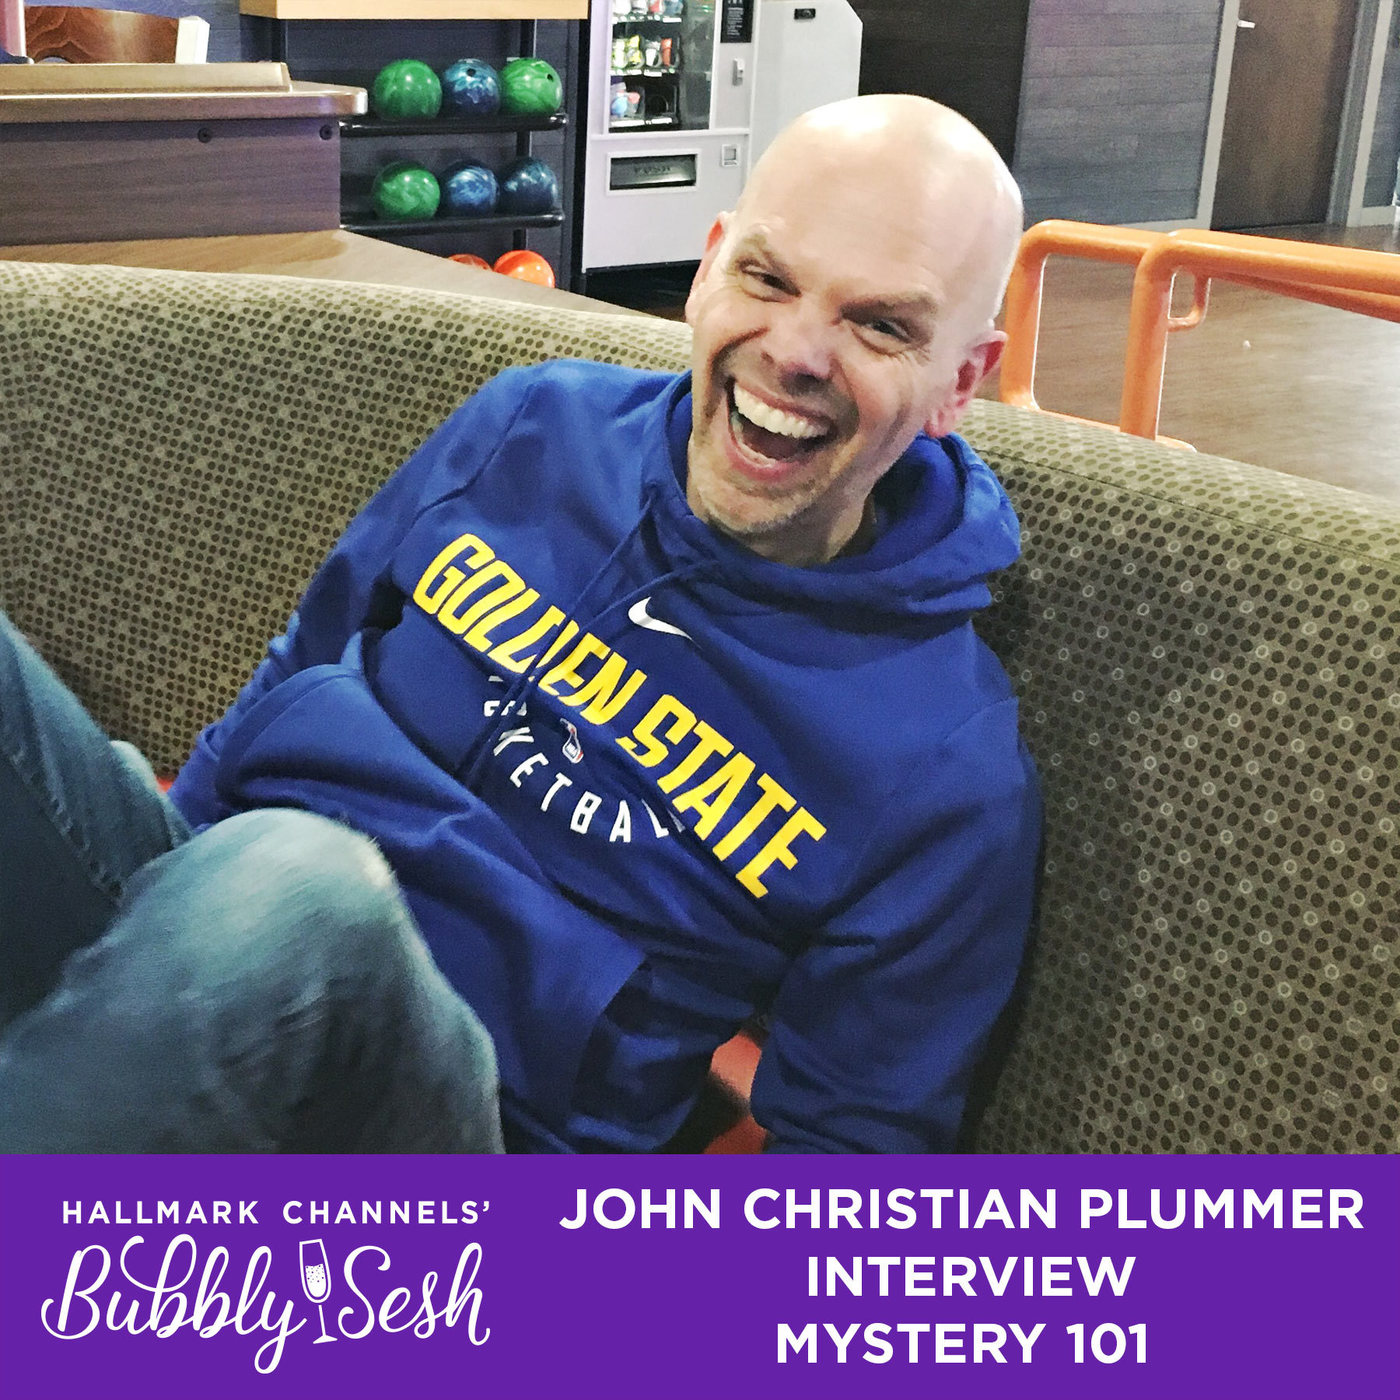 John Christian Plummer Interview - Mystery 101 